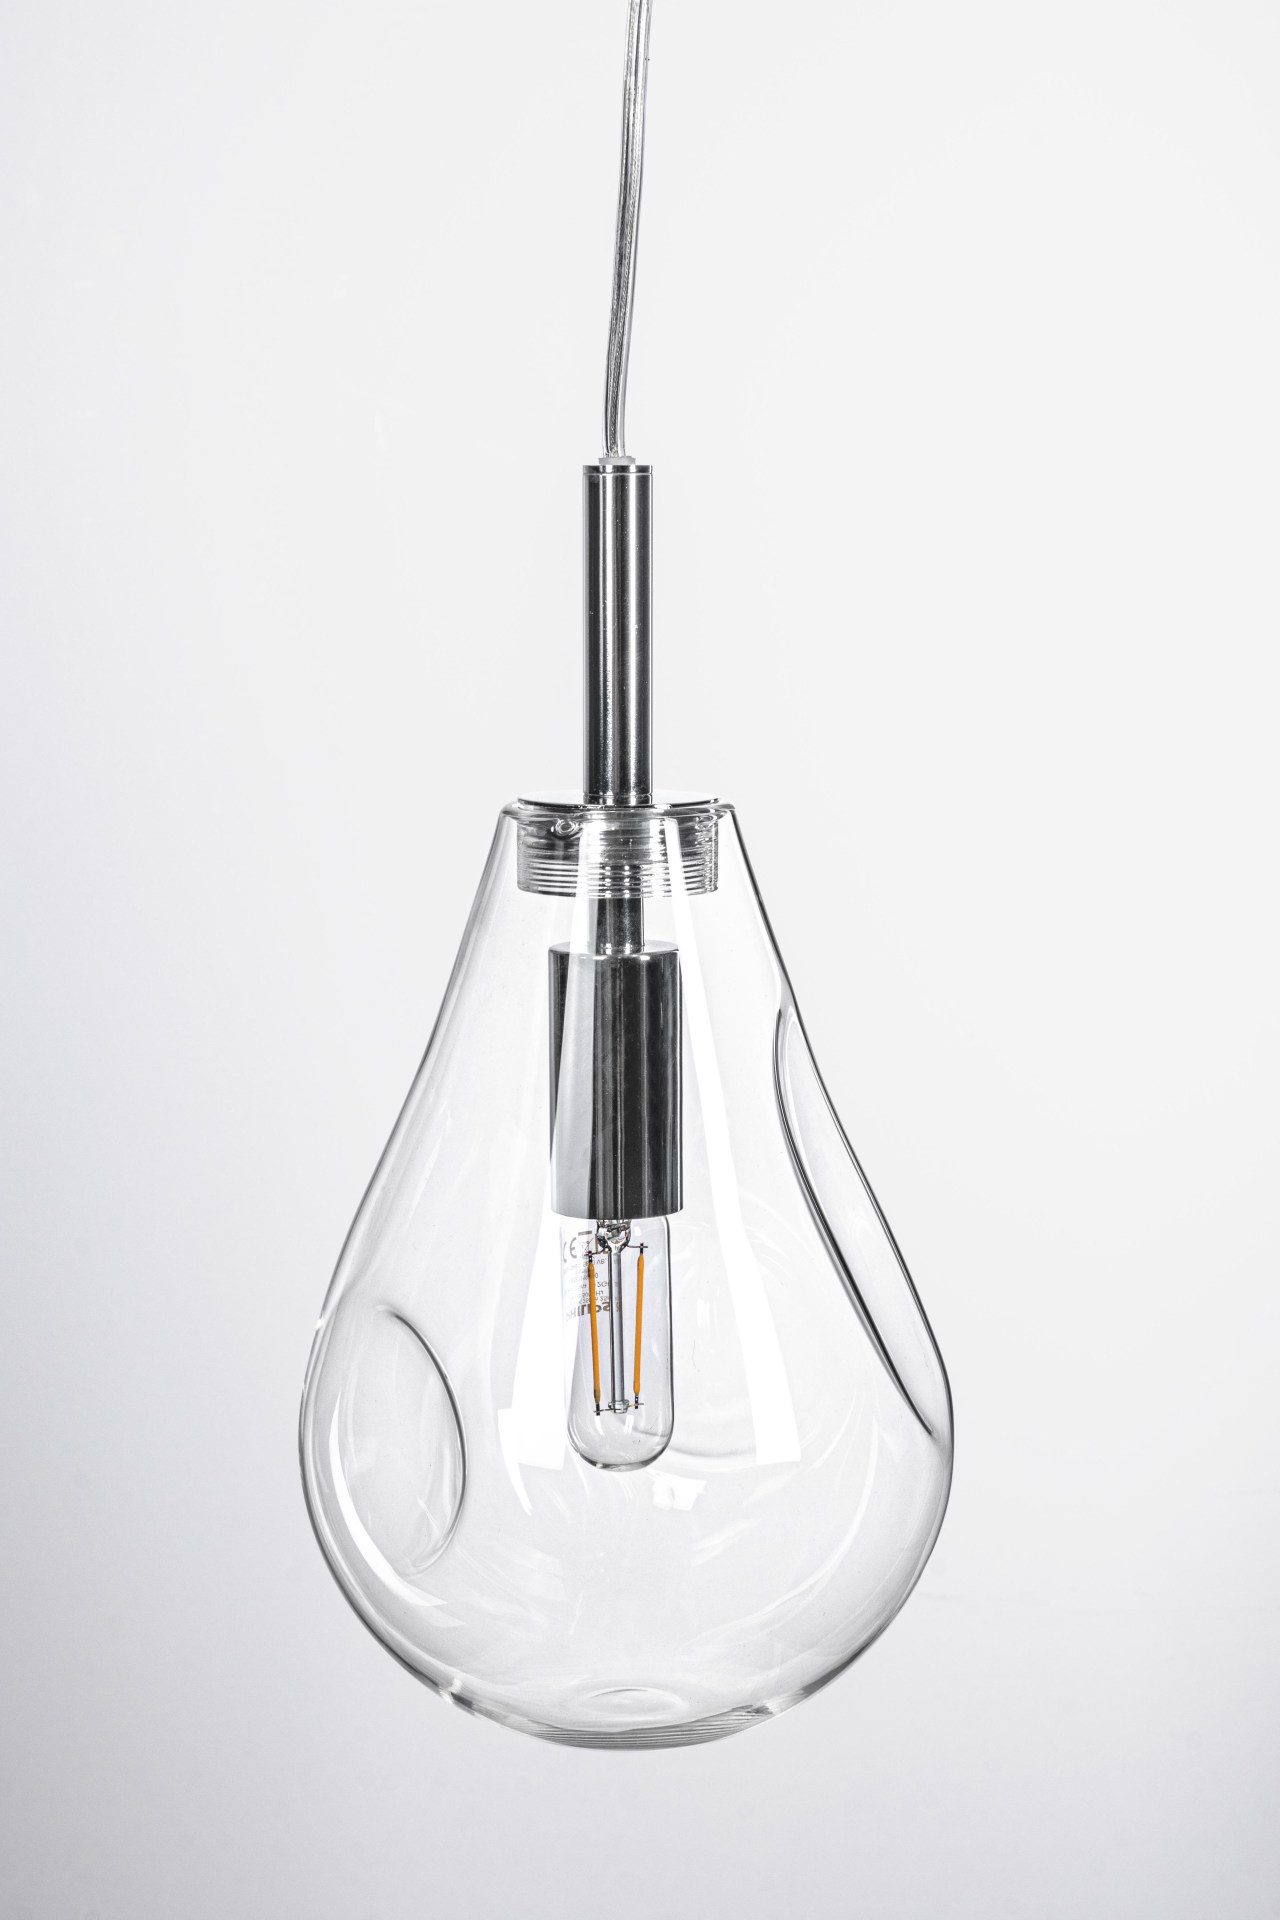 Die Hängeleuchte Reflect überzeugt mit ihrem modernen Design. Gefertigt wurde sie aus Metall, welches einen silberne Farbton besitzt. Der Lampenschirm ist aus Glas und ist klar. Die Lampe besitzt eine Höhe von 120 cm.